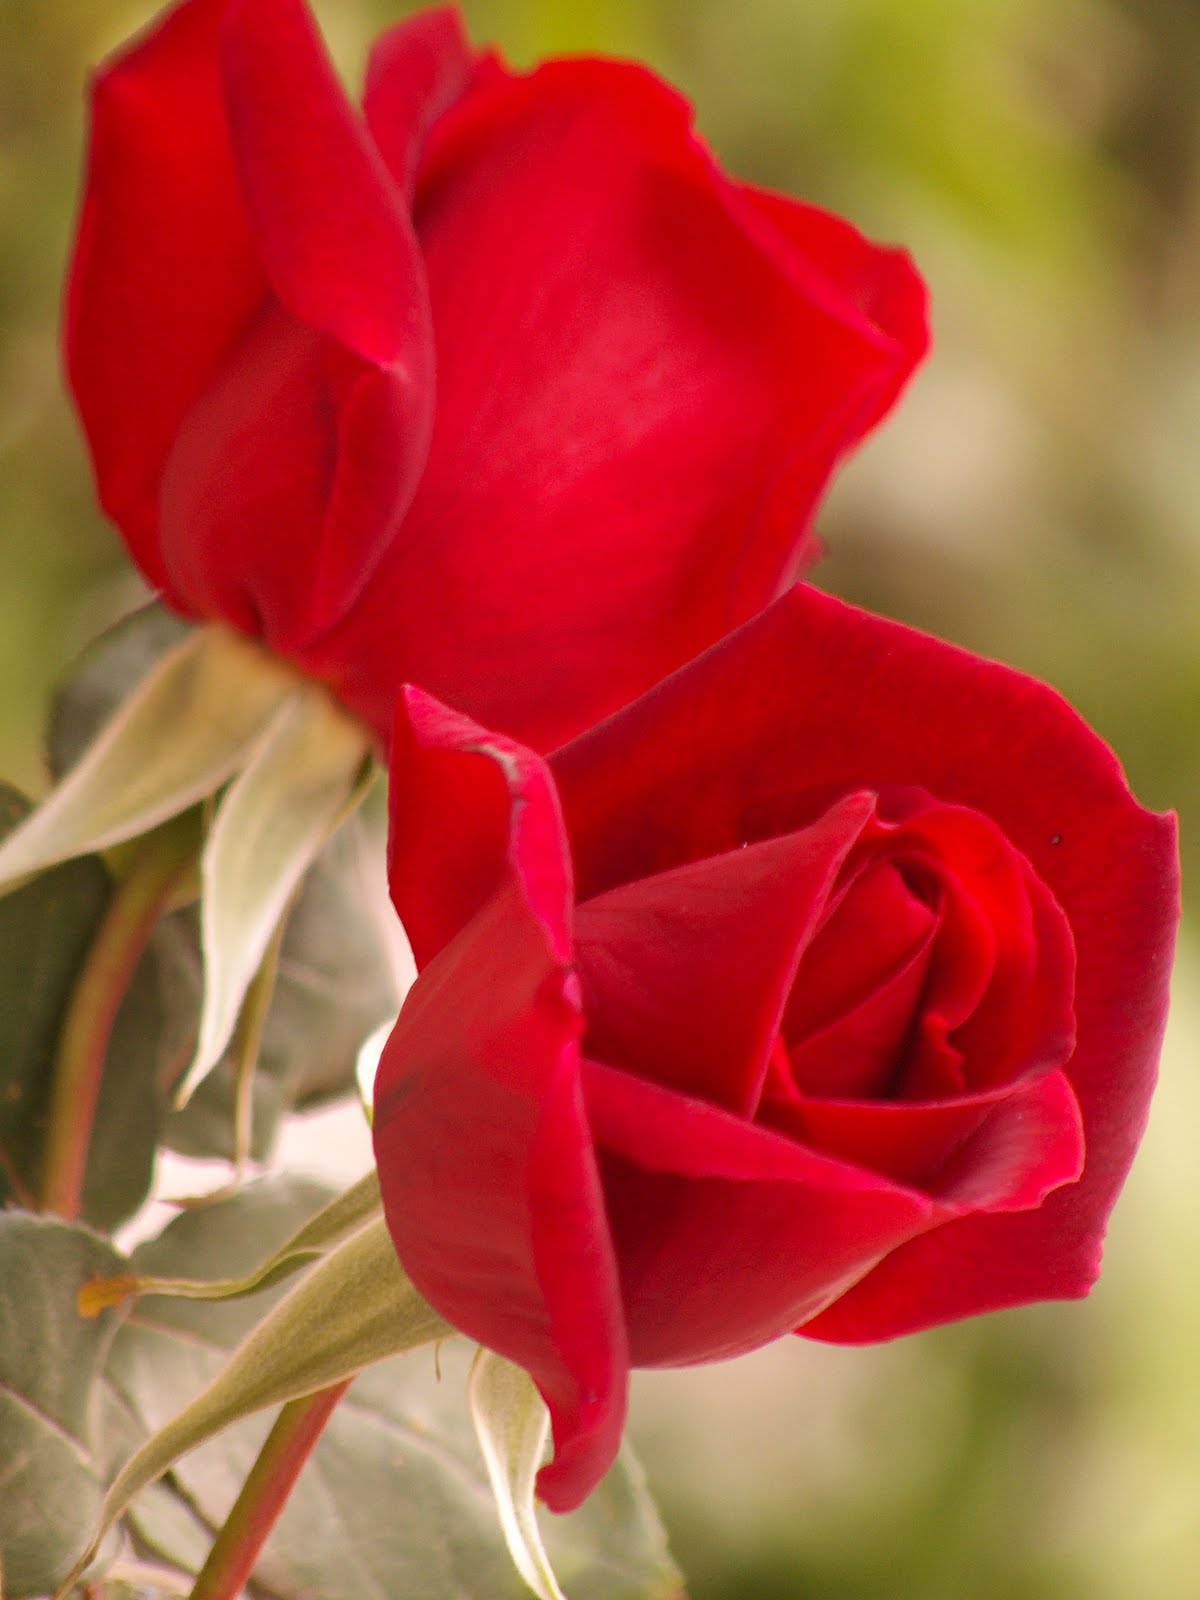 13020 اسماء الورود العربية - تعرف على الورد باشكاله واسمائه بالصور كرستينا رضا